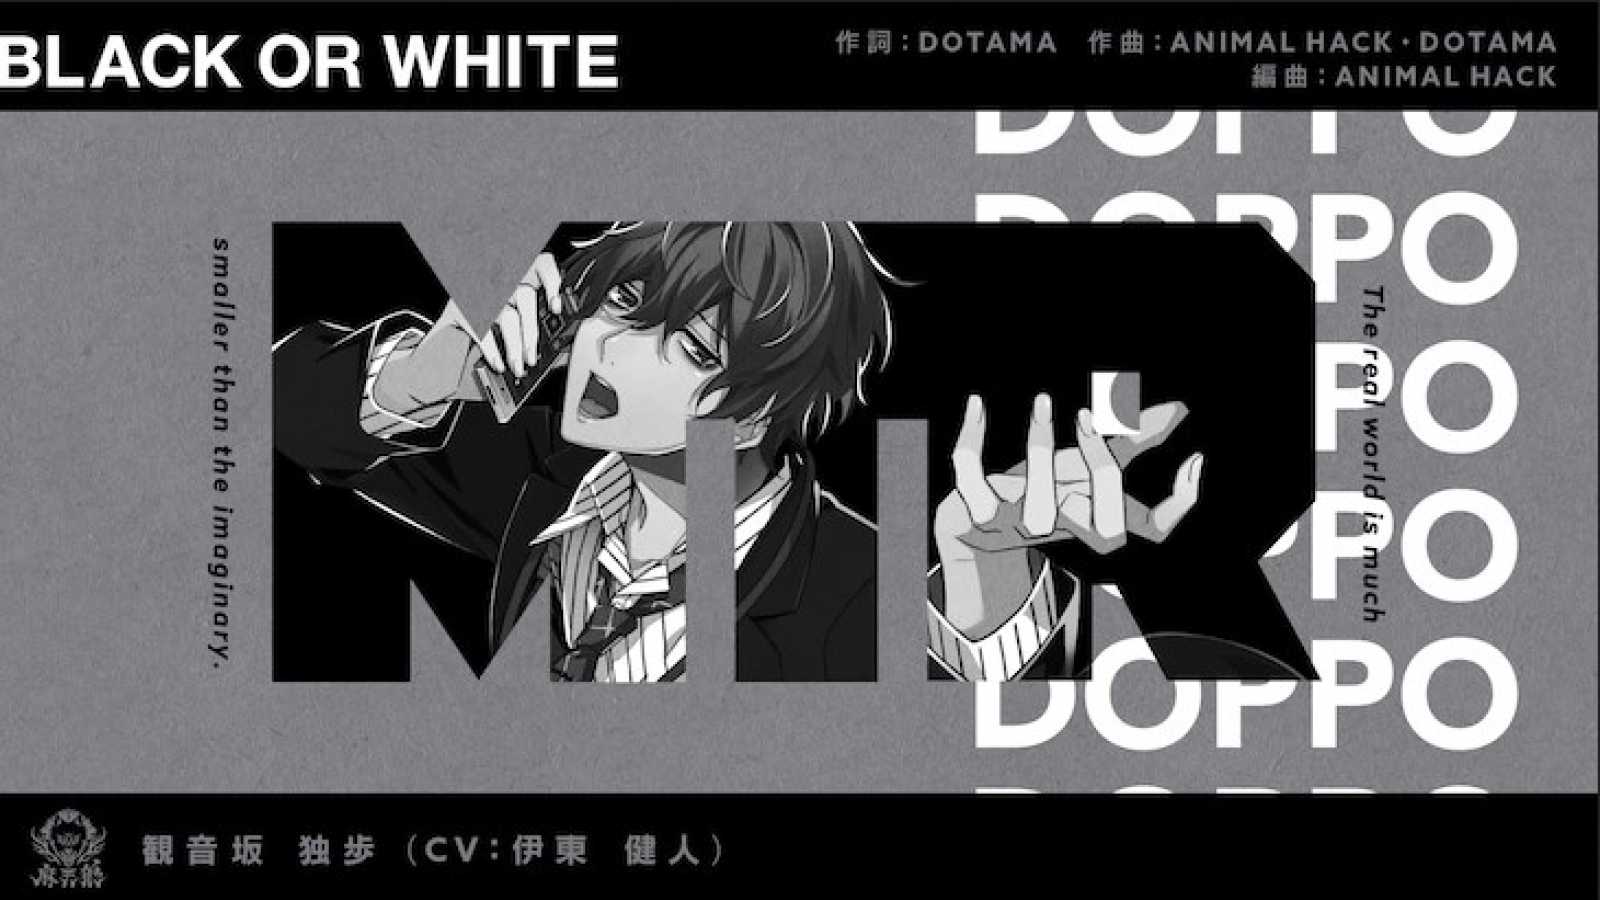 DOTAMA e ANIMAL HACK produzem nova faixa para Doppo Kannonzaka, personagem de Hypnosis Mic © EVIL LINE RECORDS. All rights reserved.